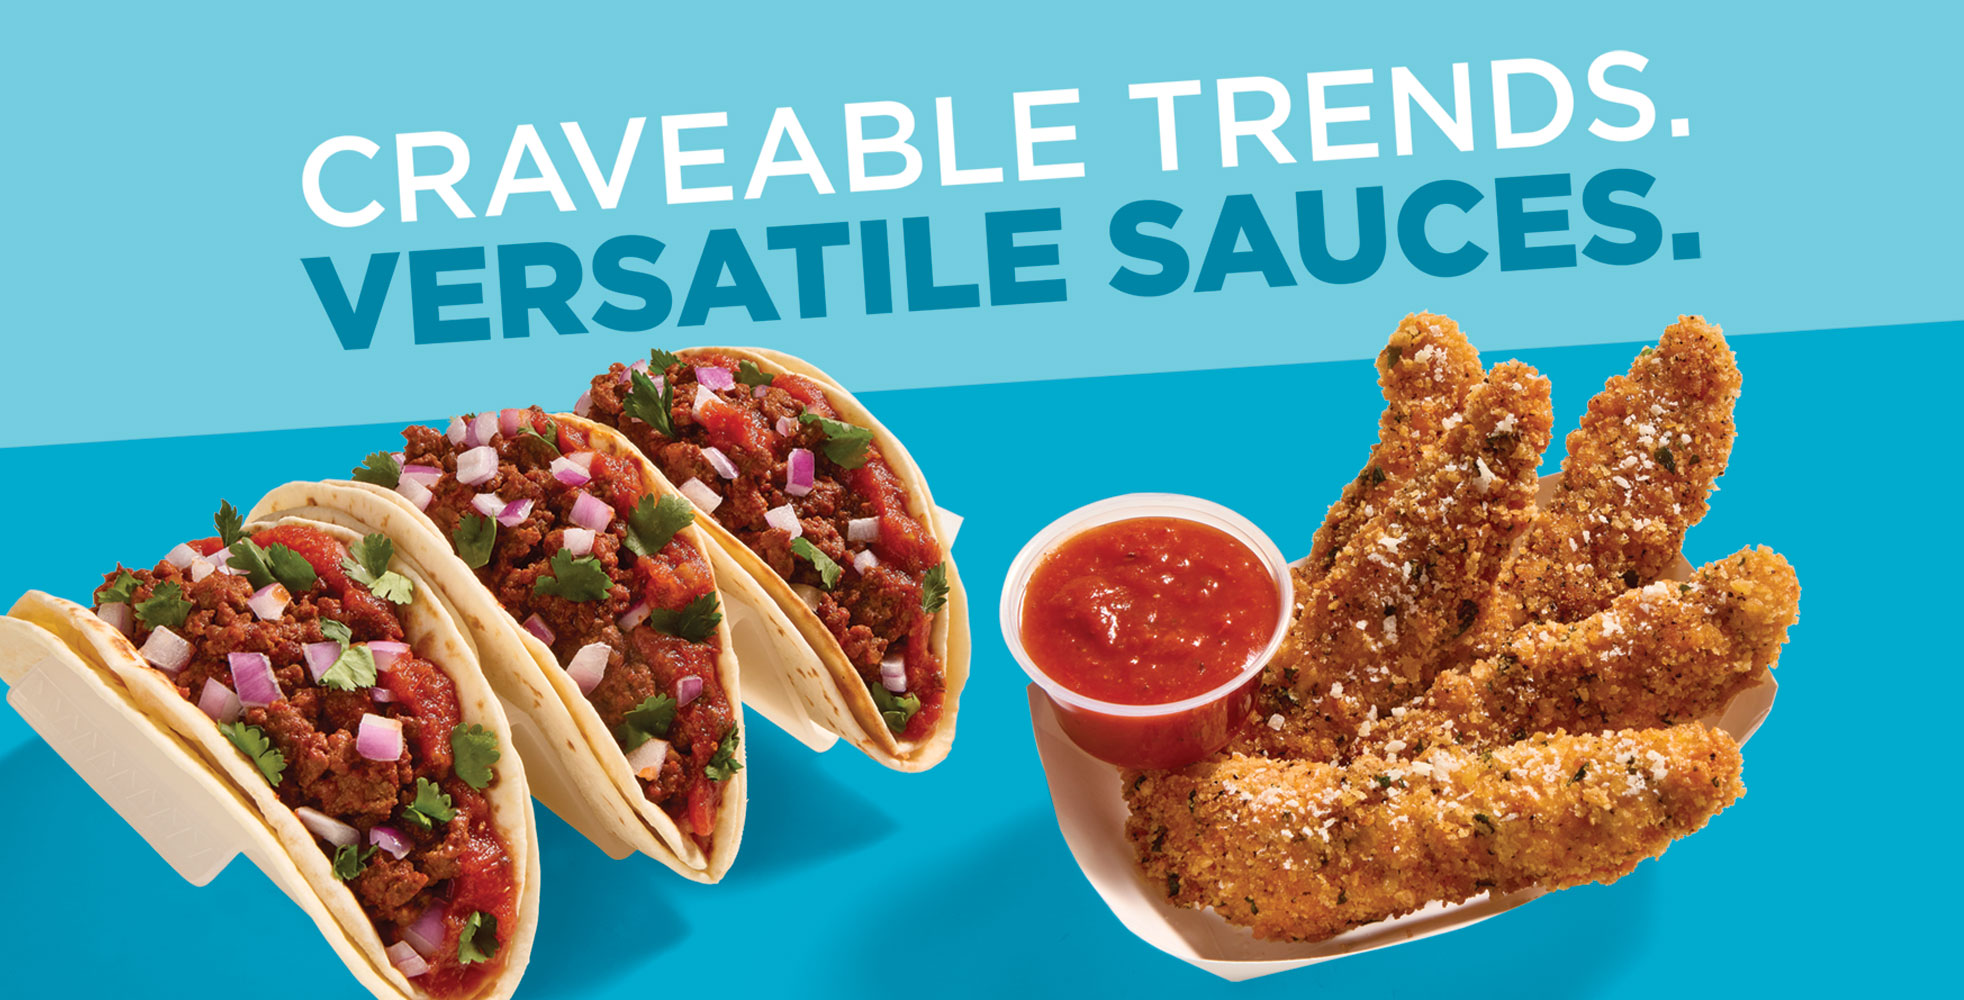 Craveable trends. Versatile sauces.